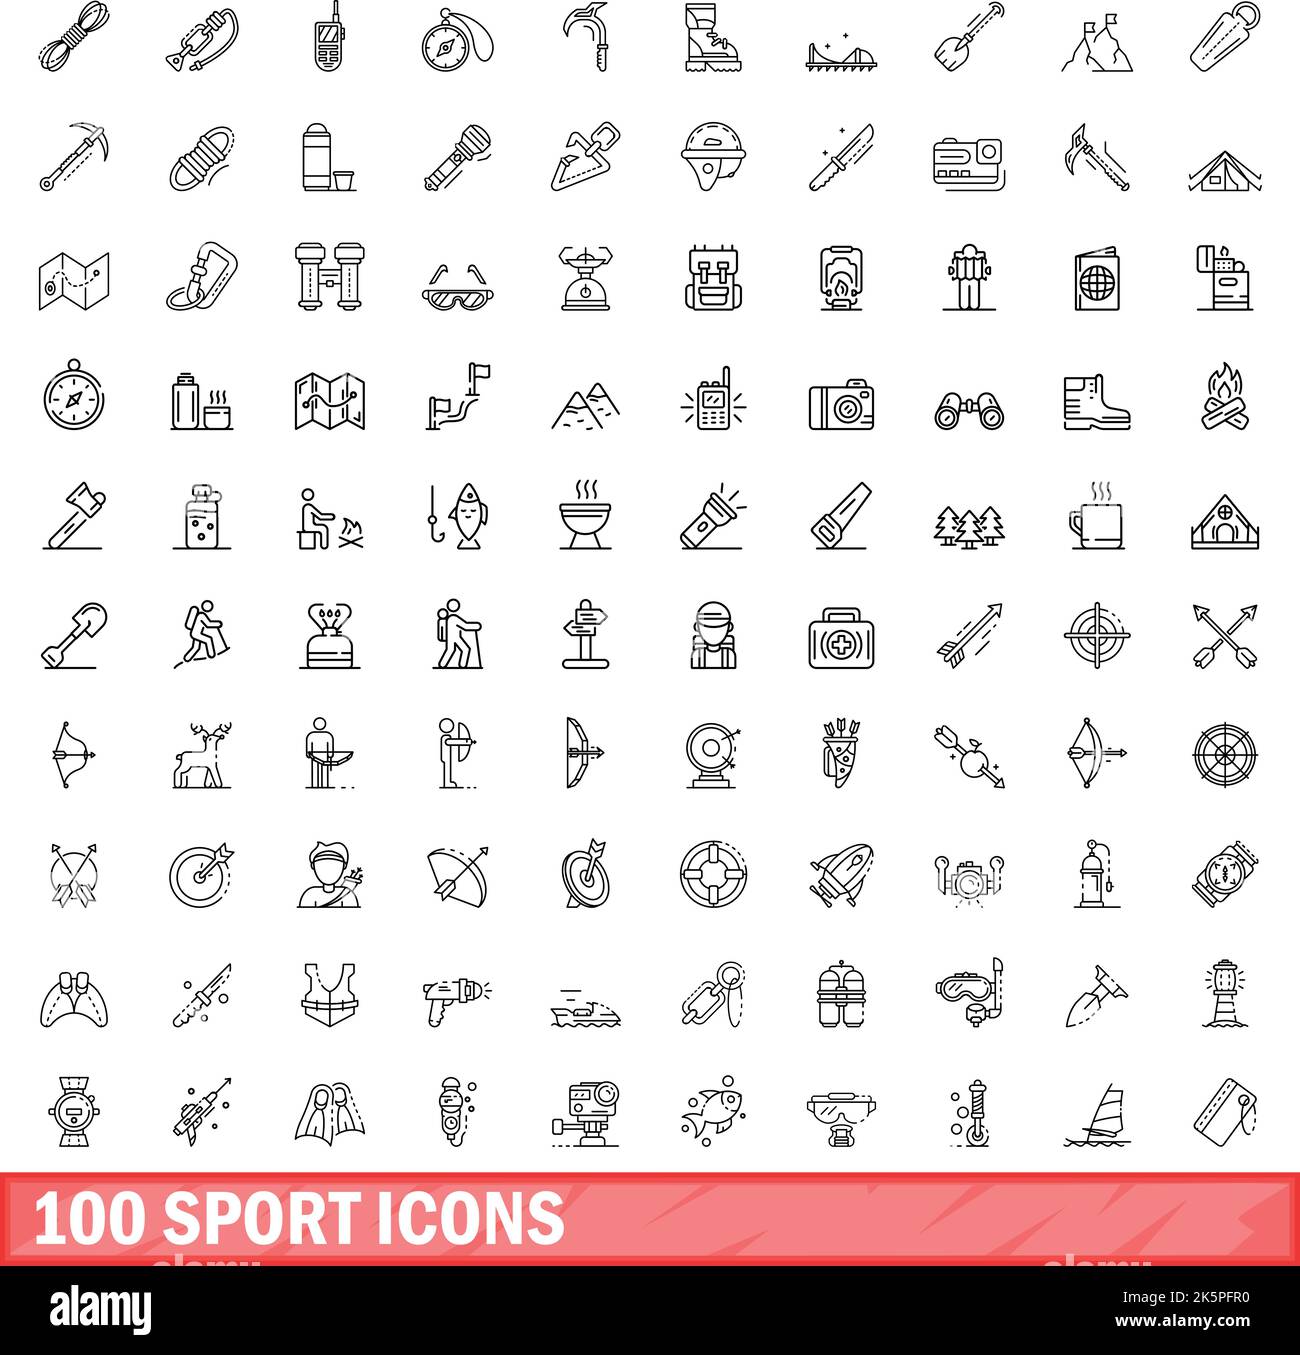 ensemble de 100 icônes de sport. Illustration de 100 icônes de sport ensemble vectoriel isolé sur fond blanc Illustration de Vecteur